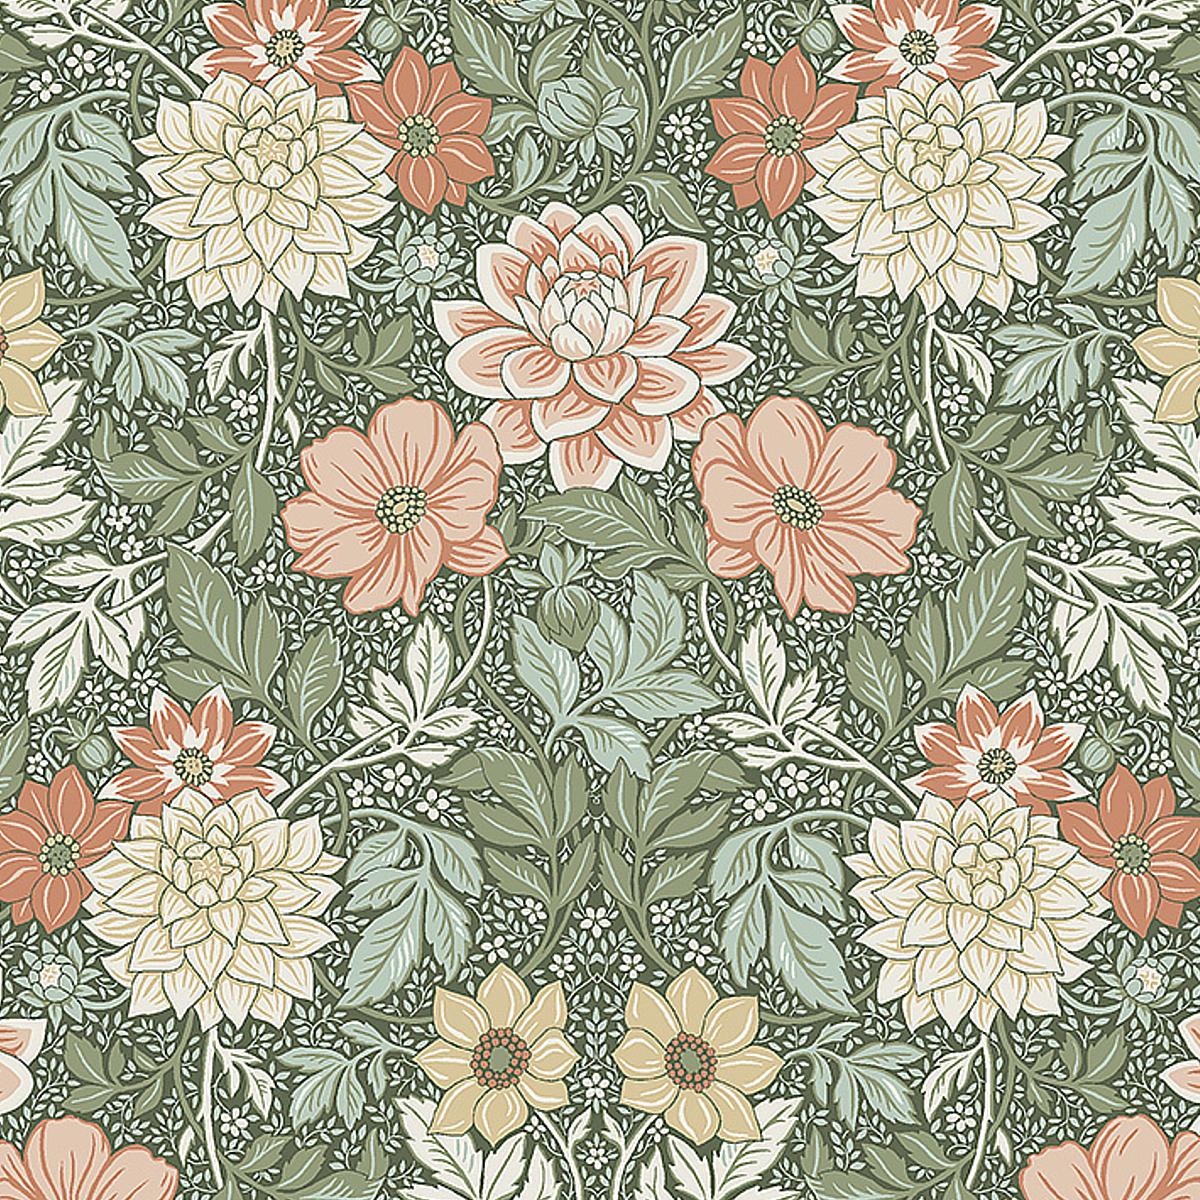 Schumacher Dahlia Garden Wallpaper